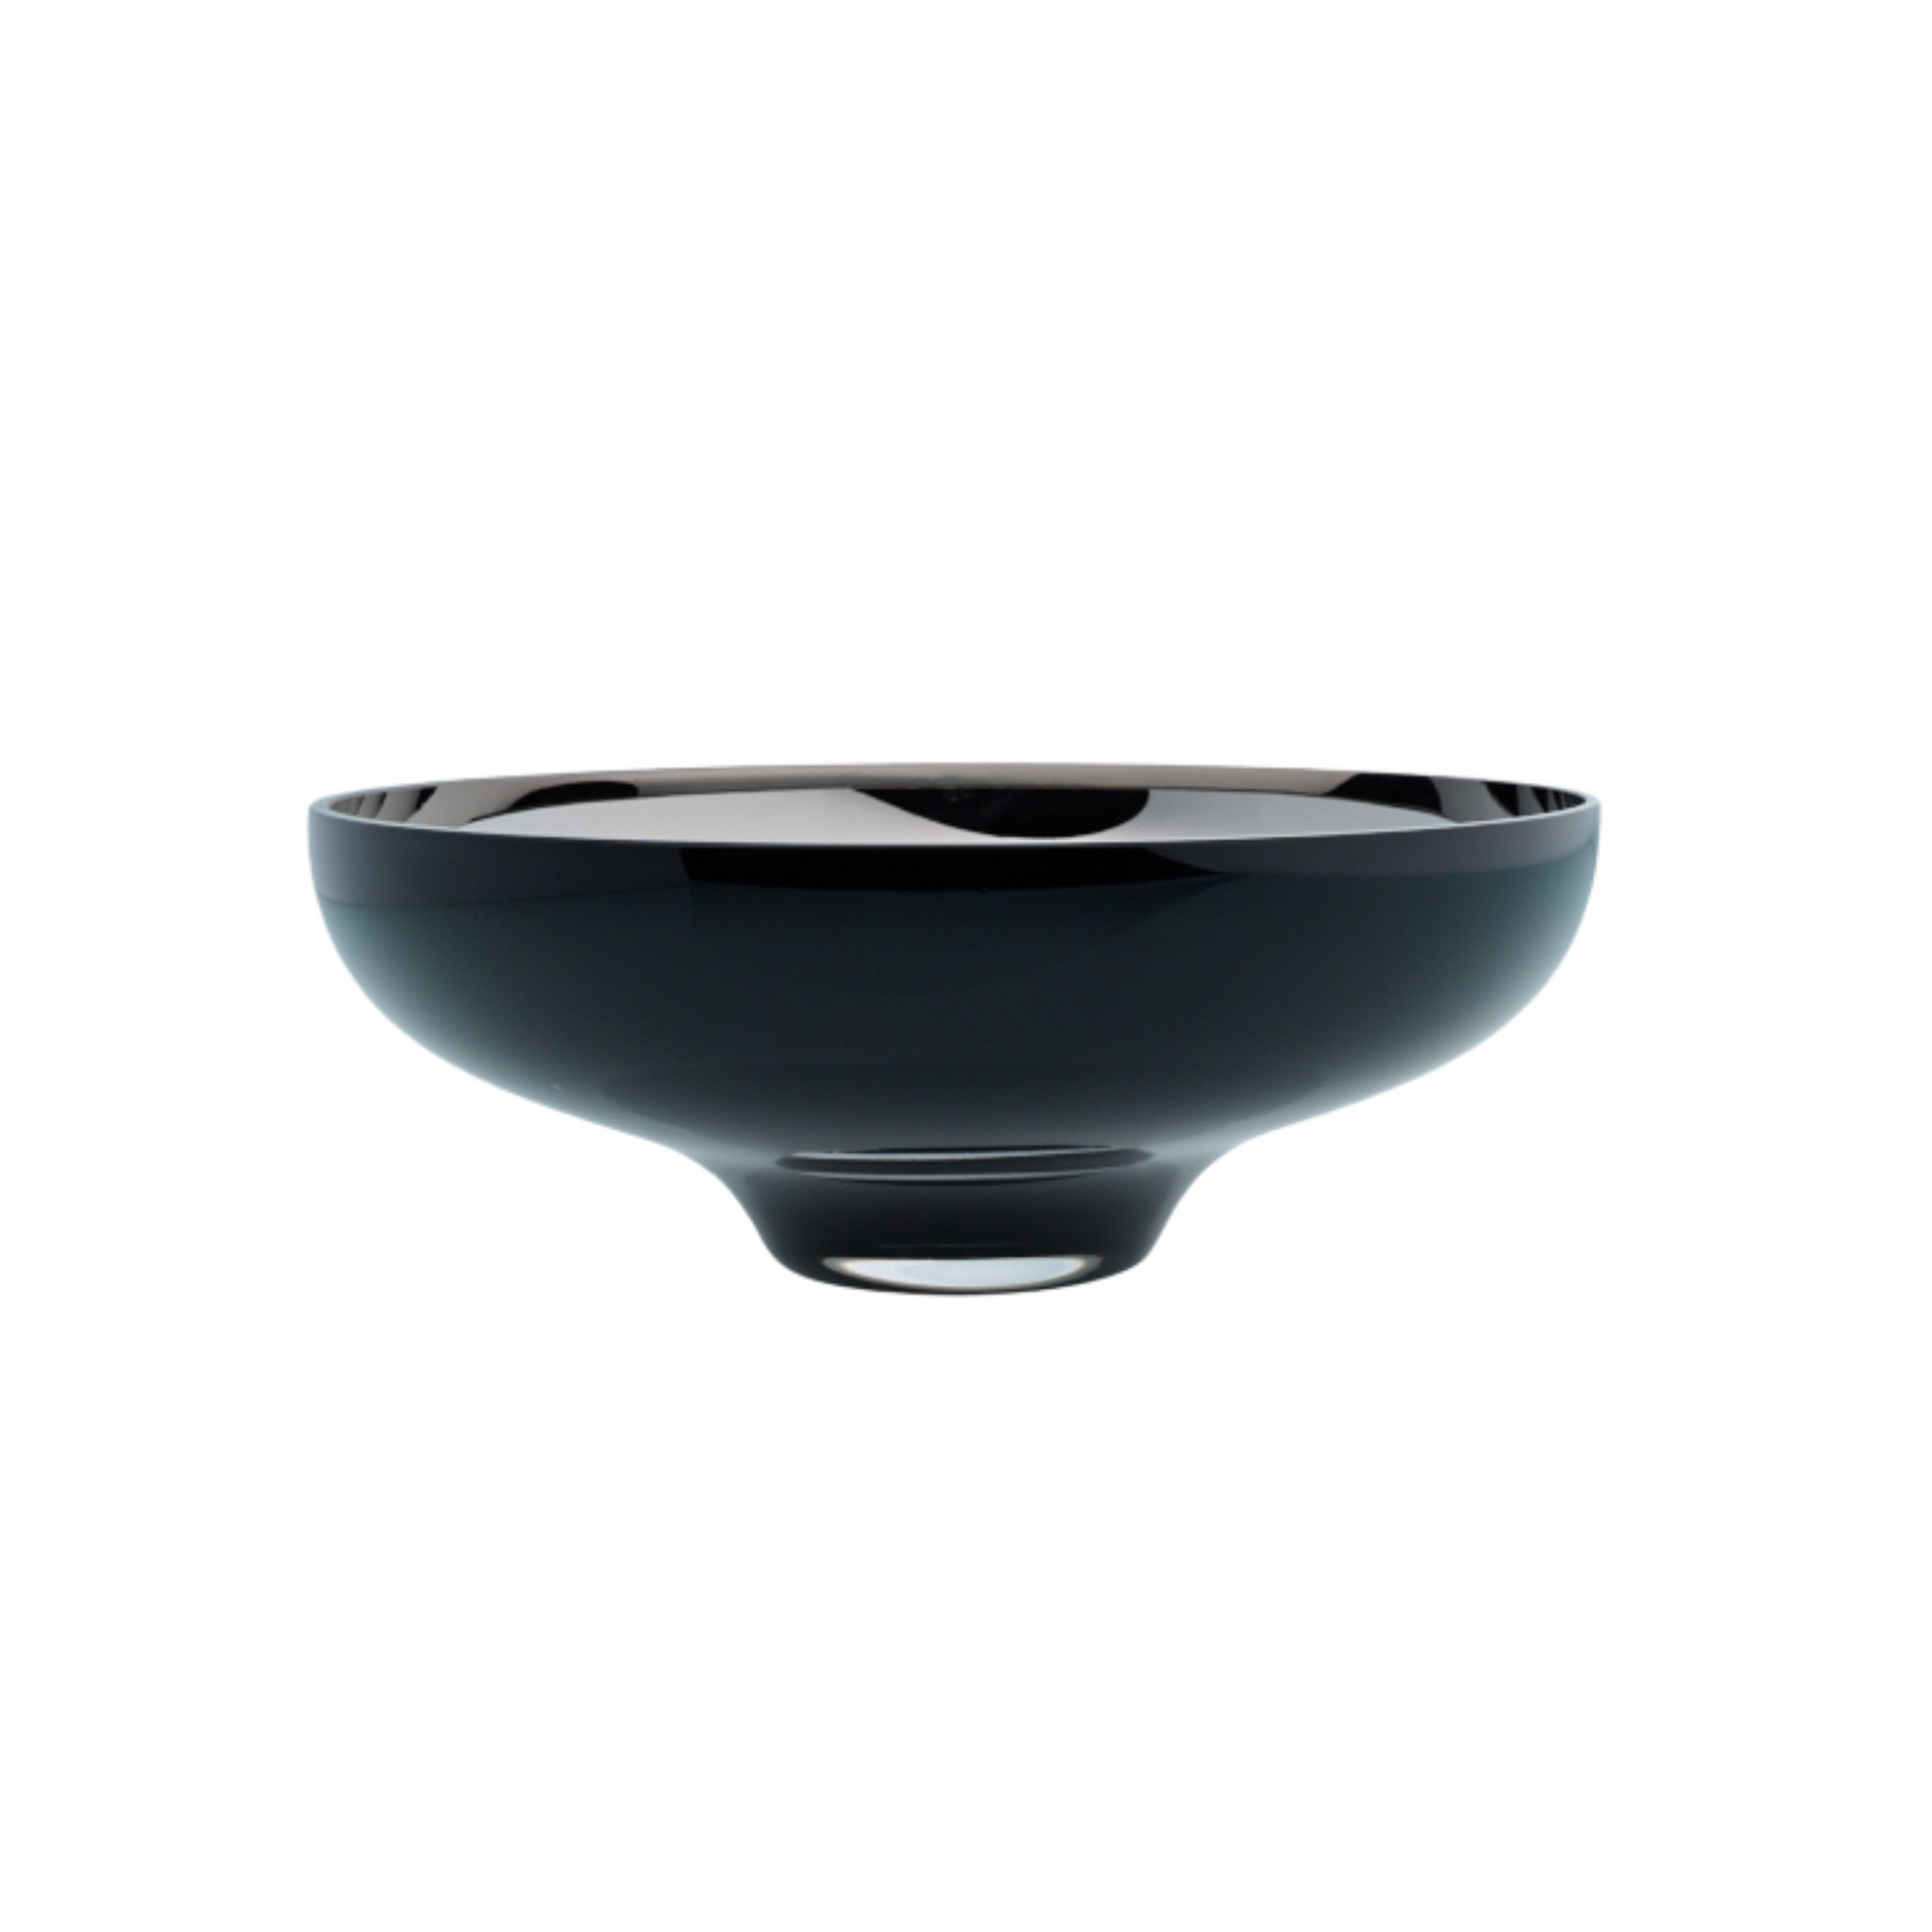 Glass bowl black decor homewares